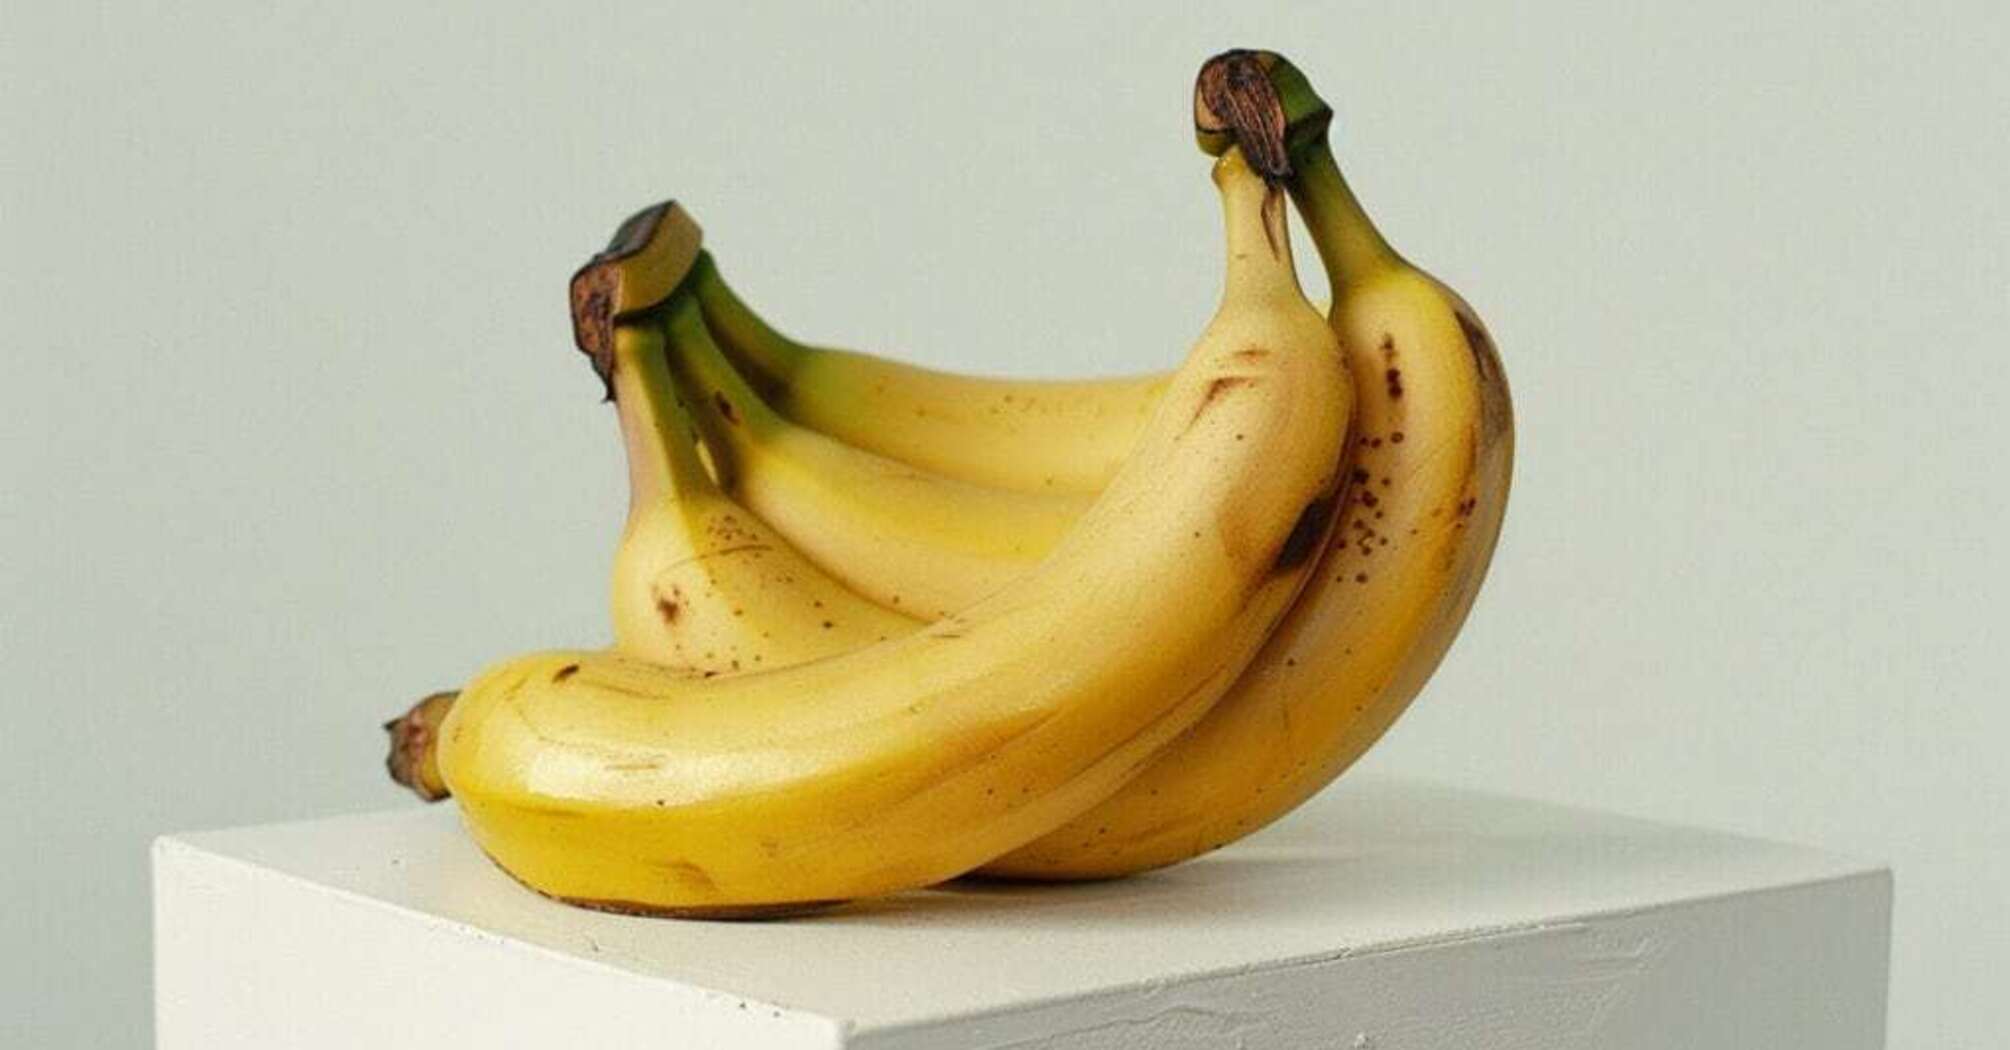 How to extend the shelf life of bananas